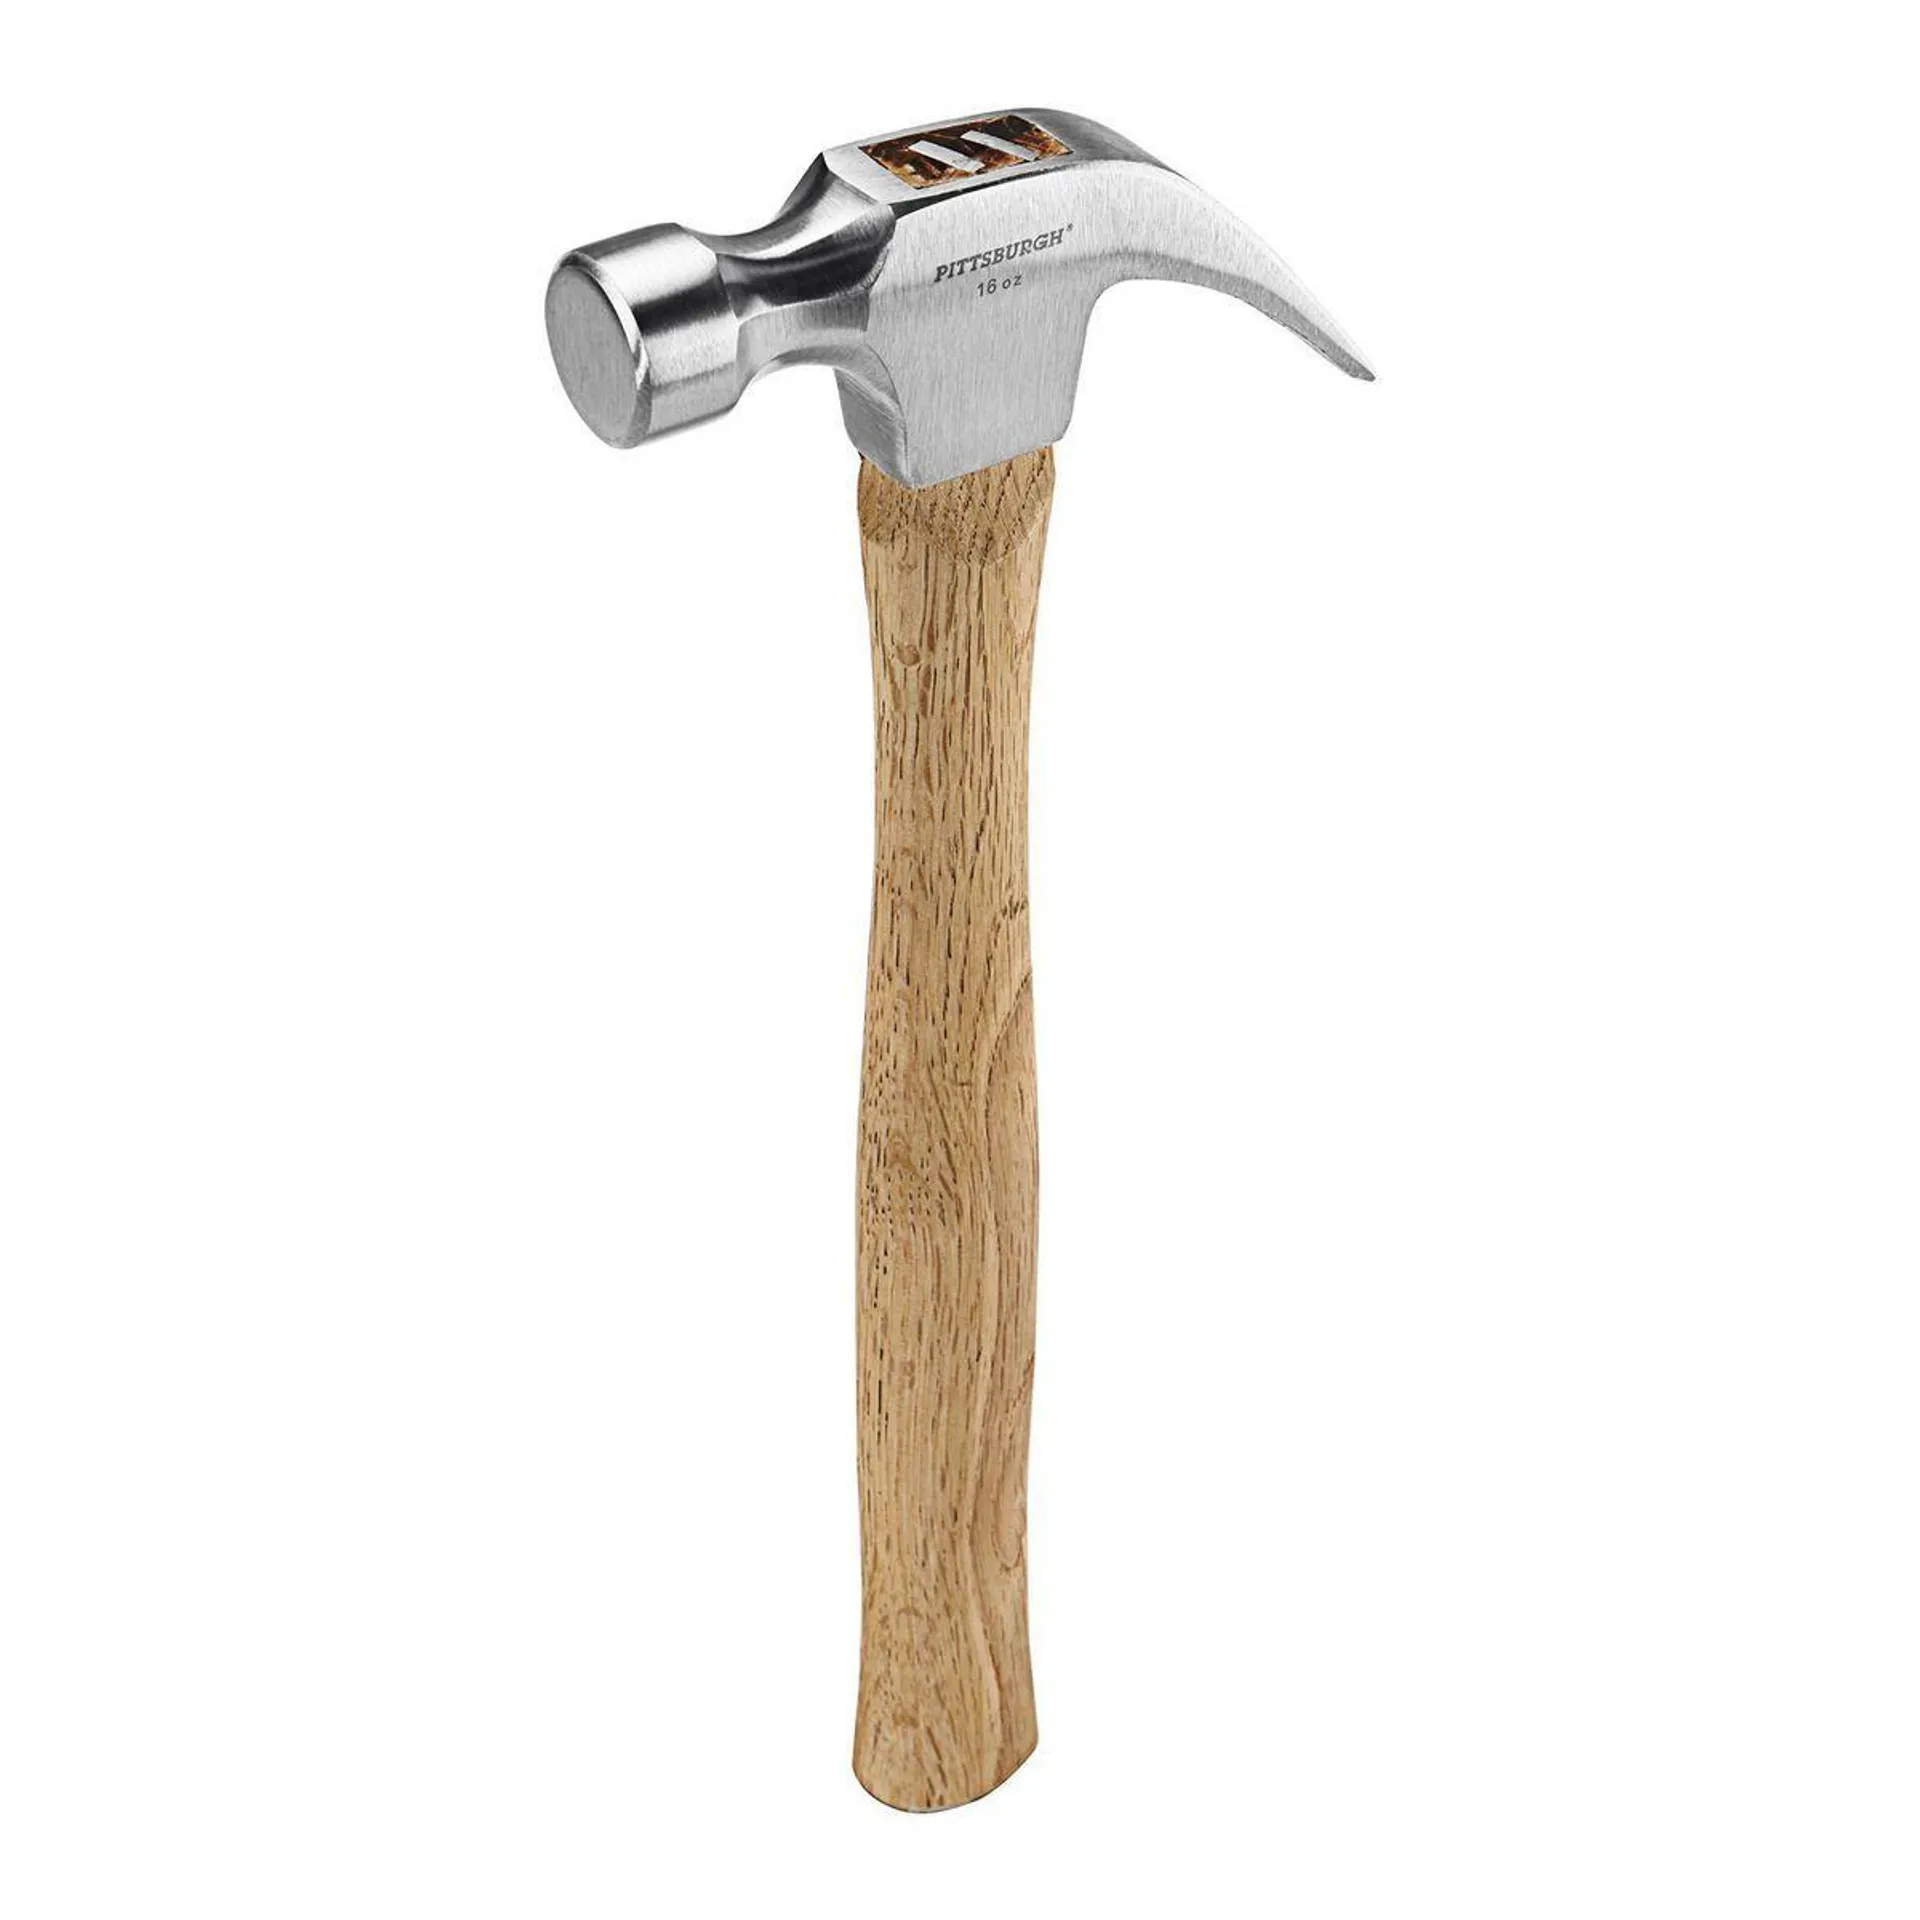 PITTSBURGH 16 oz. Claw Hammer